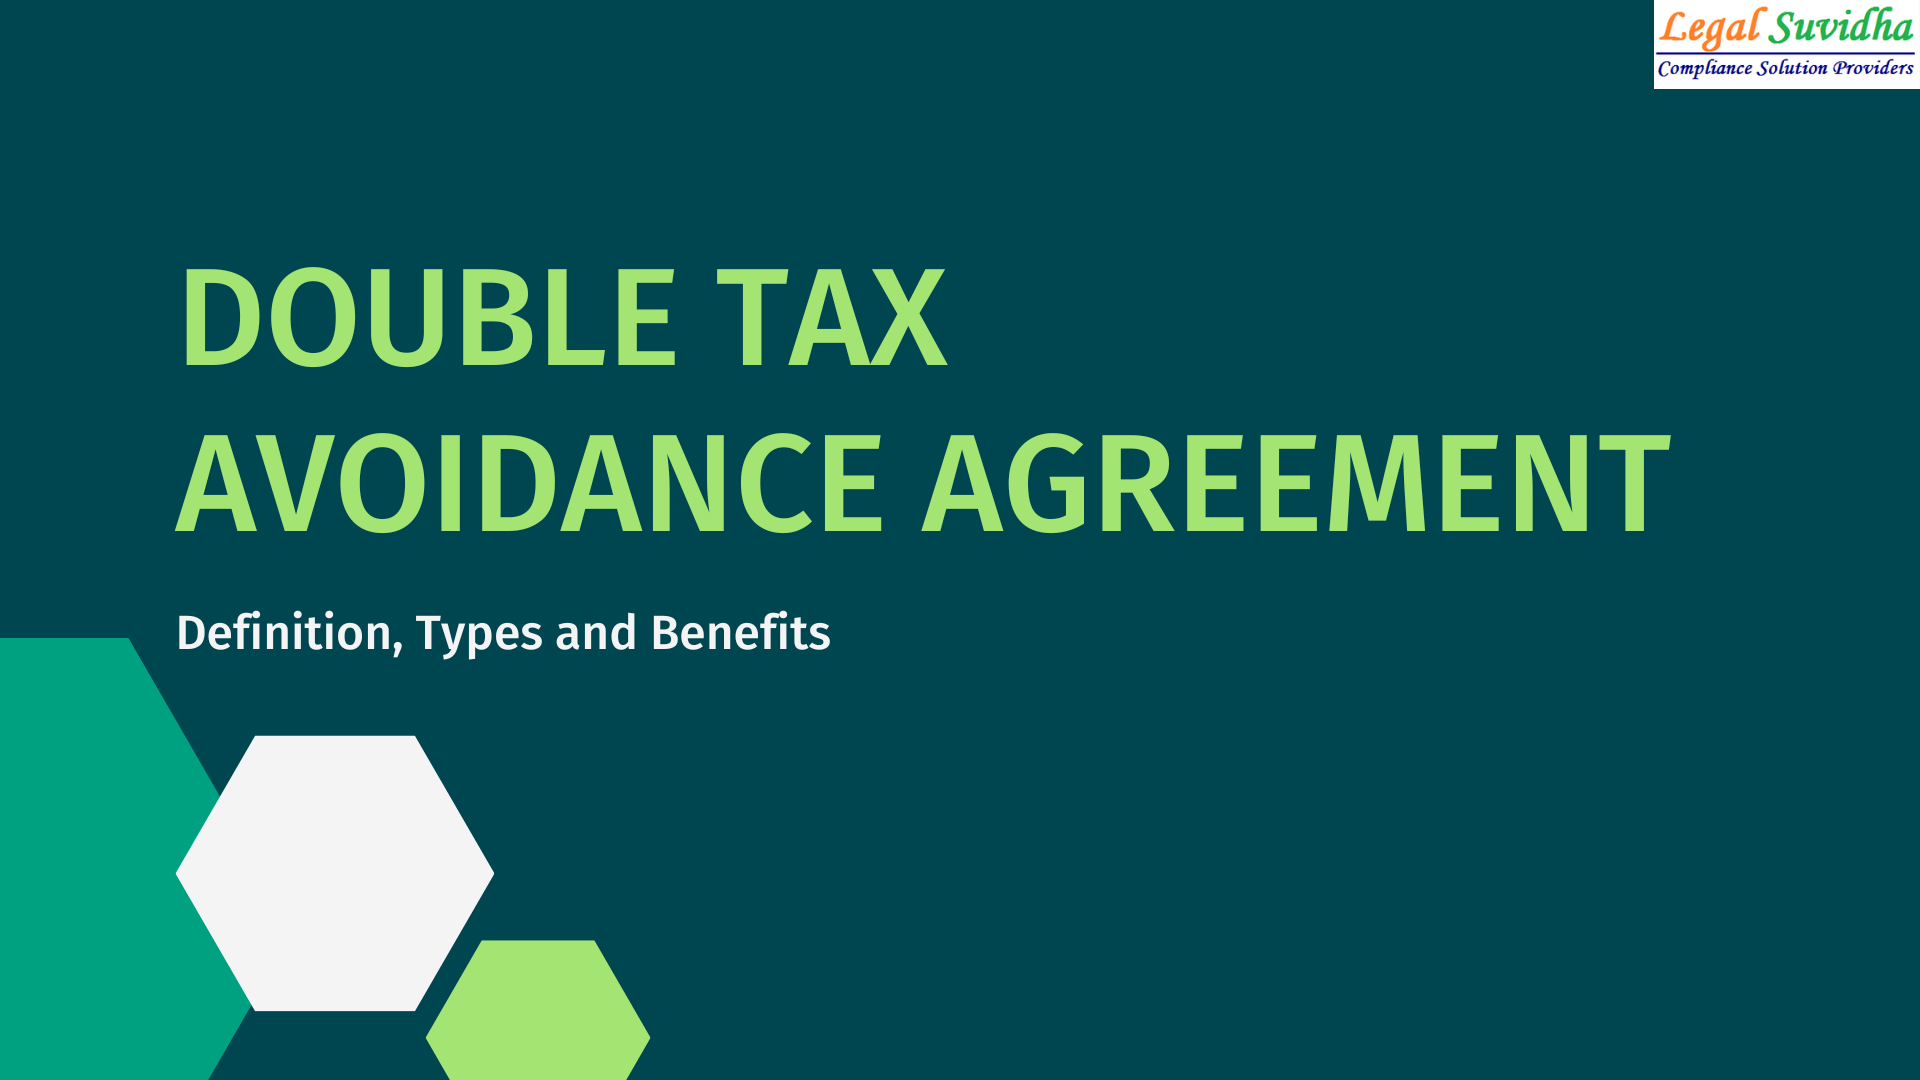 Double Taxation Avoidance Agreement